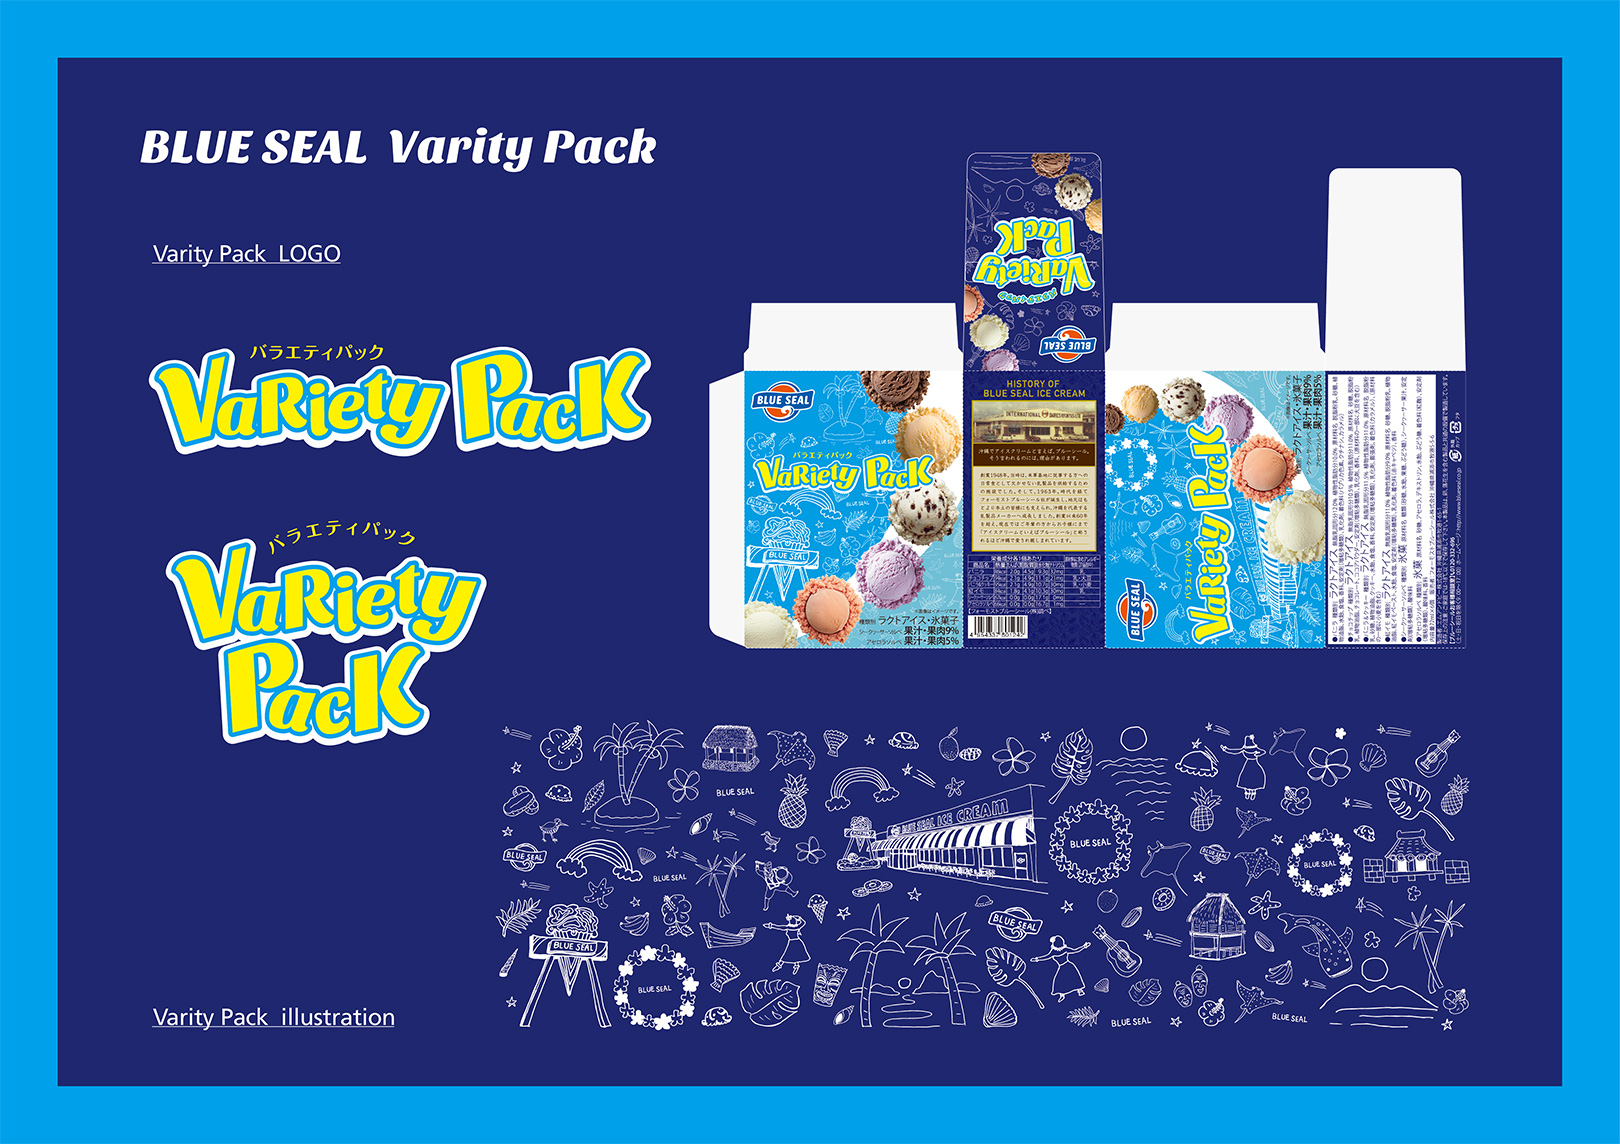 BLUE SEAL VarietyPack